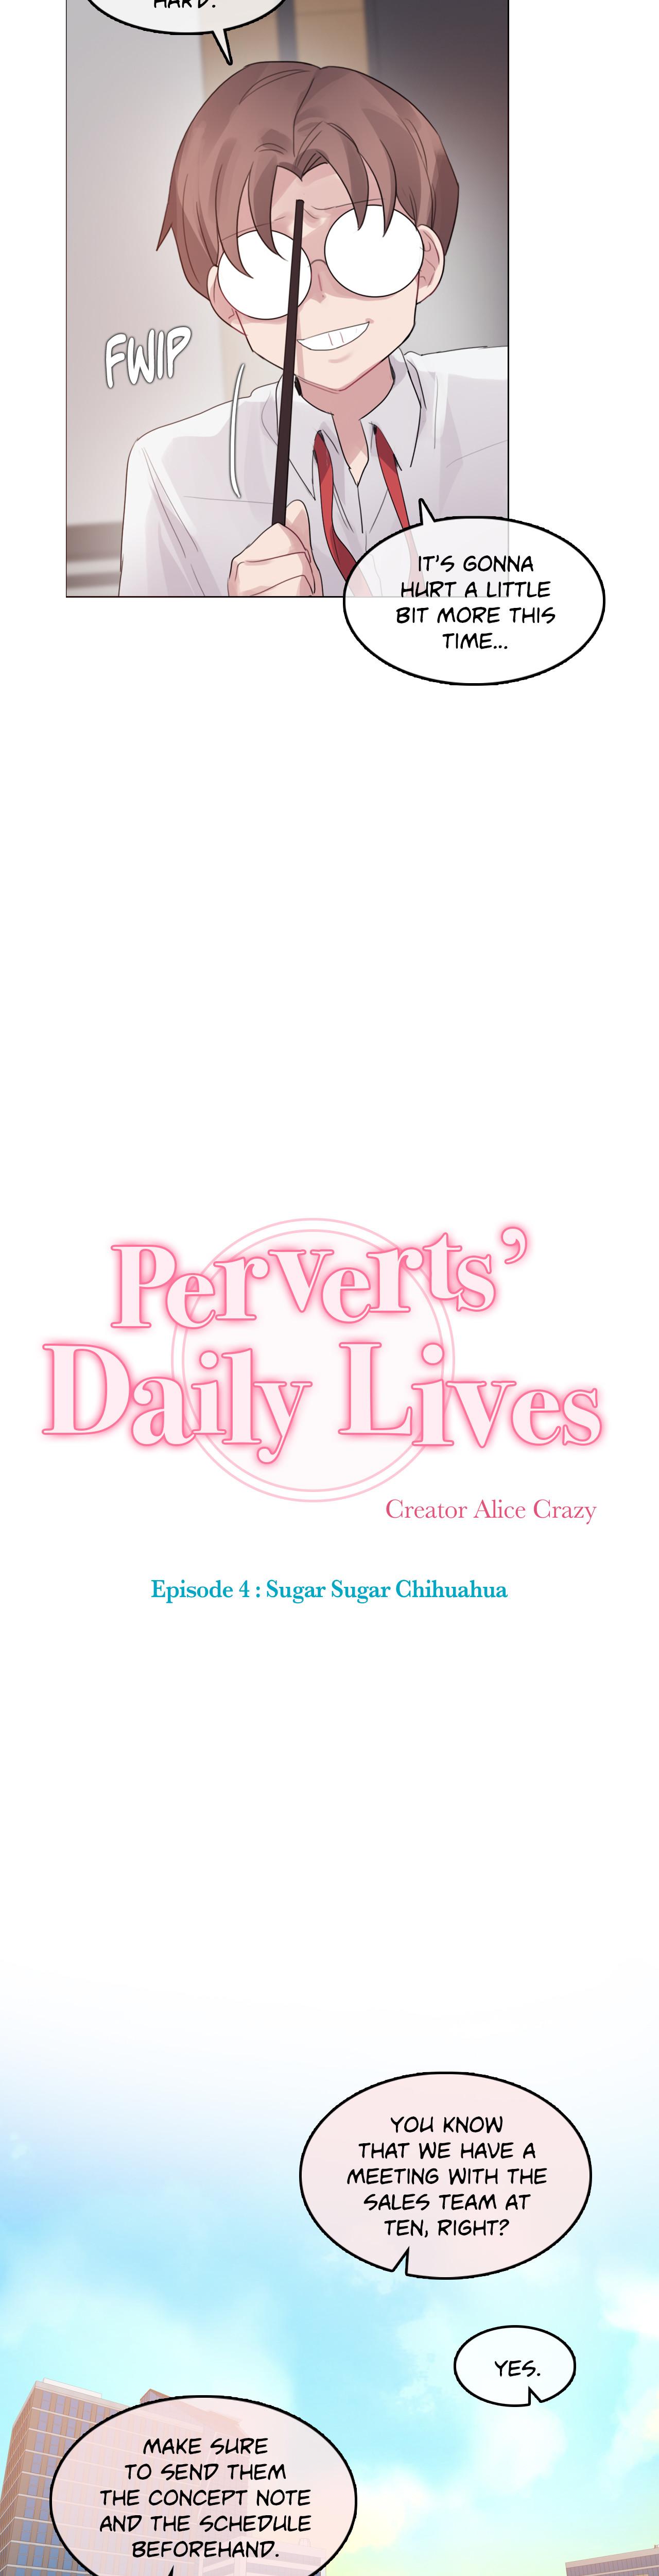 Perverts' Daily Lives Episode 4: Sugar Sugar Chihuahua 25